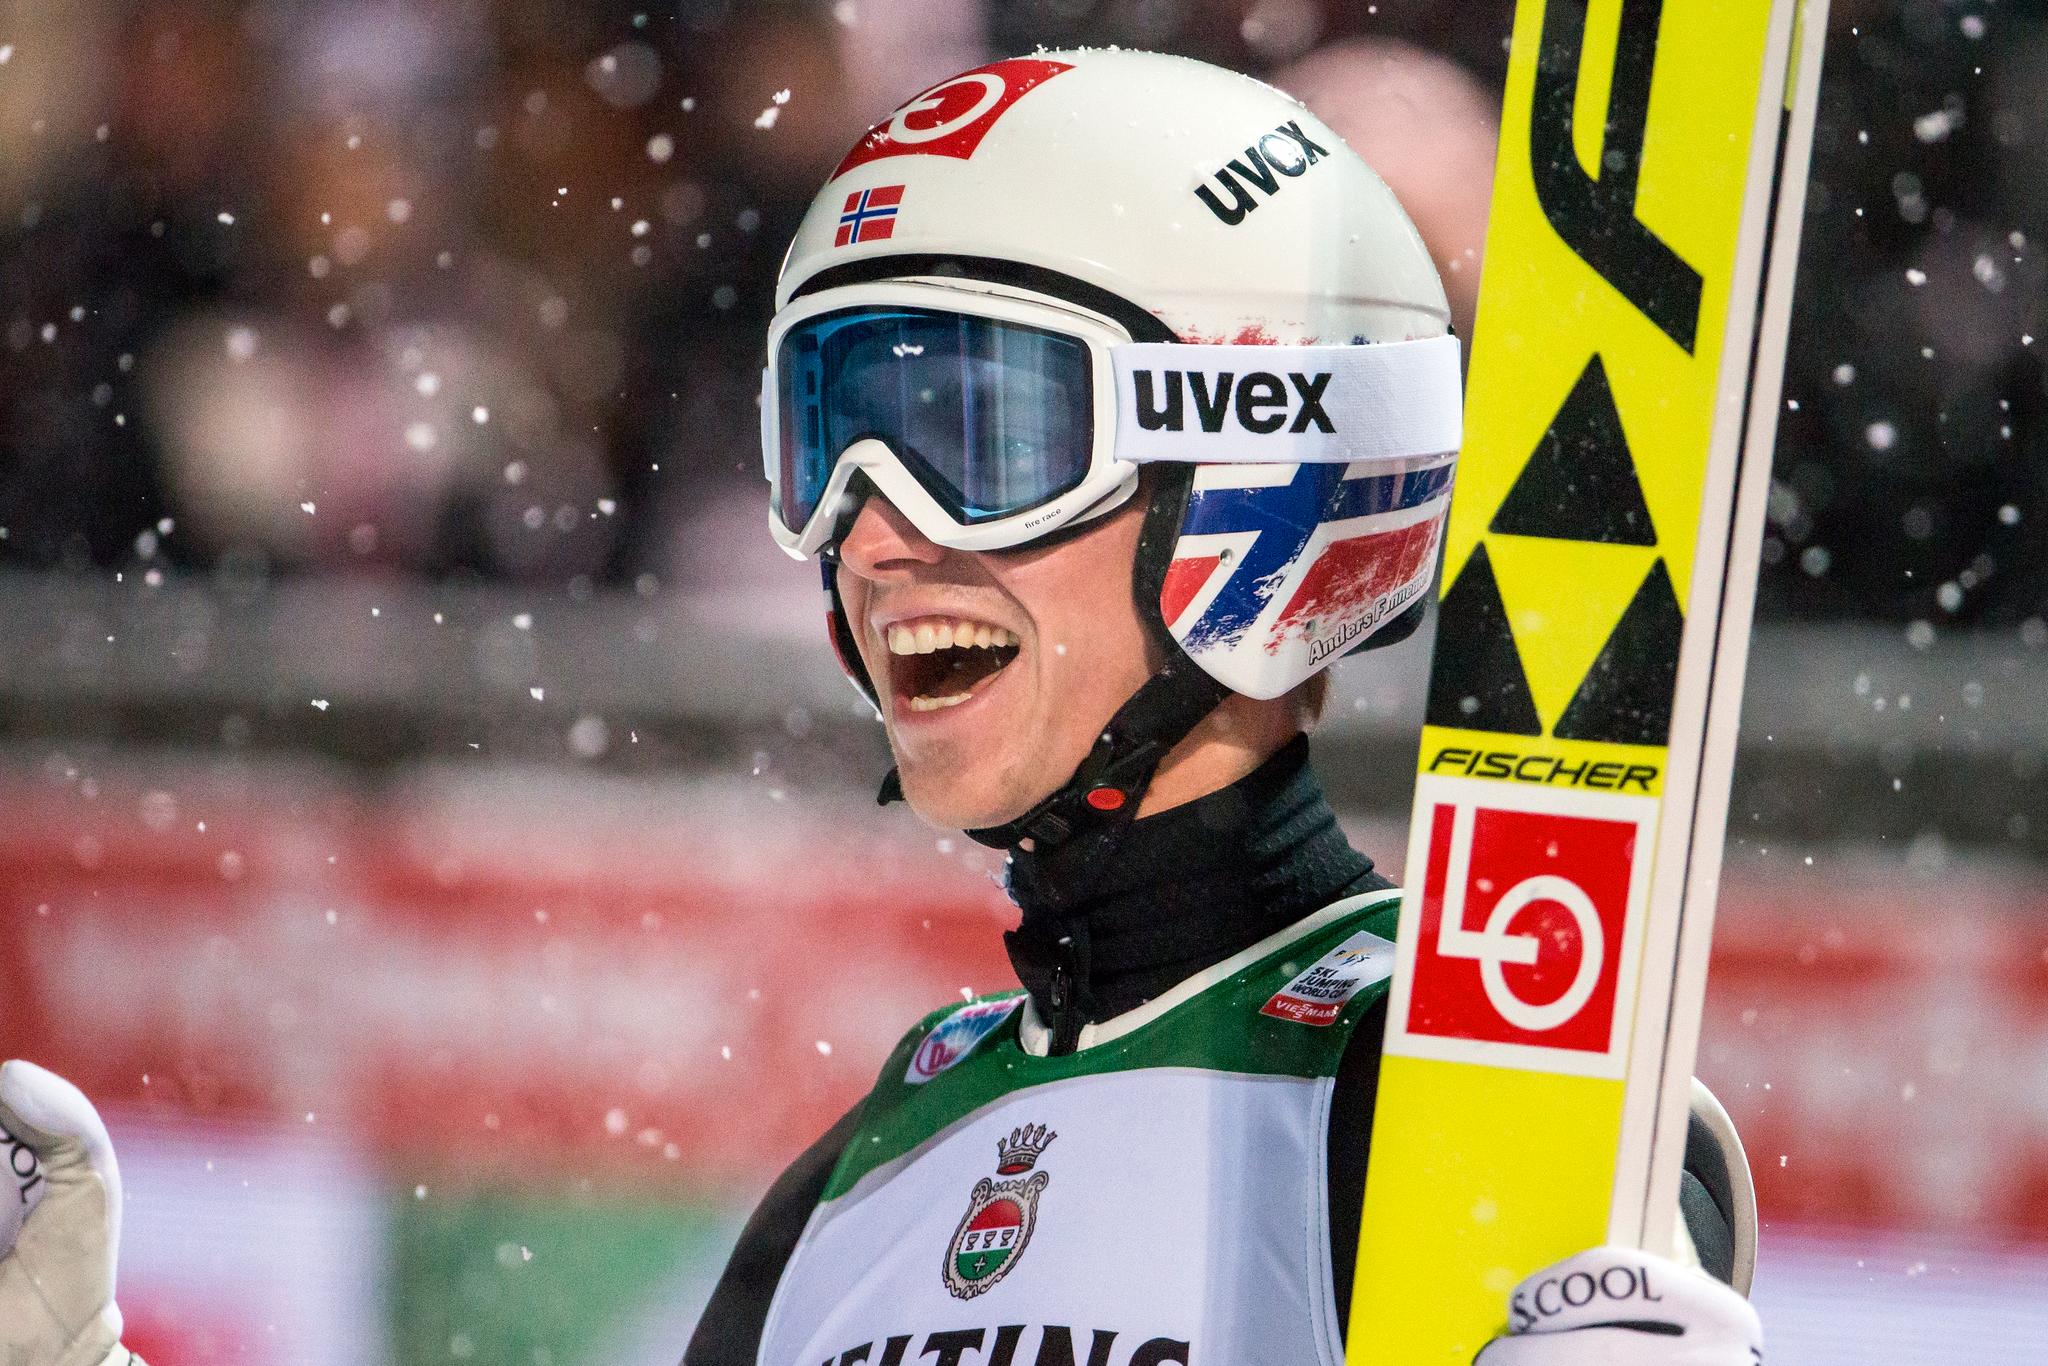 Anders Fannemel vant verdenscuprennet i Engelberg før jul.